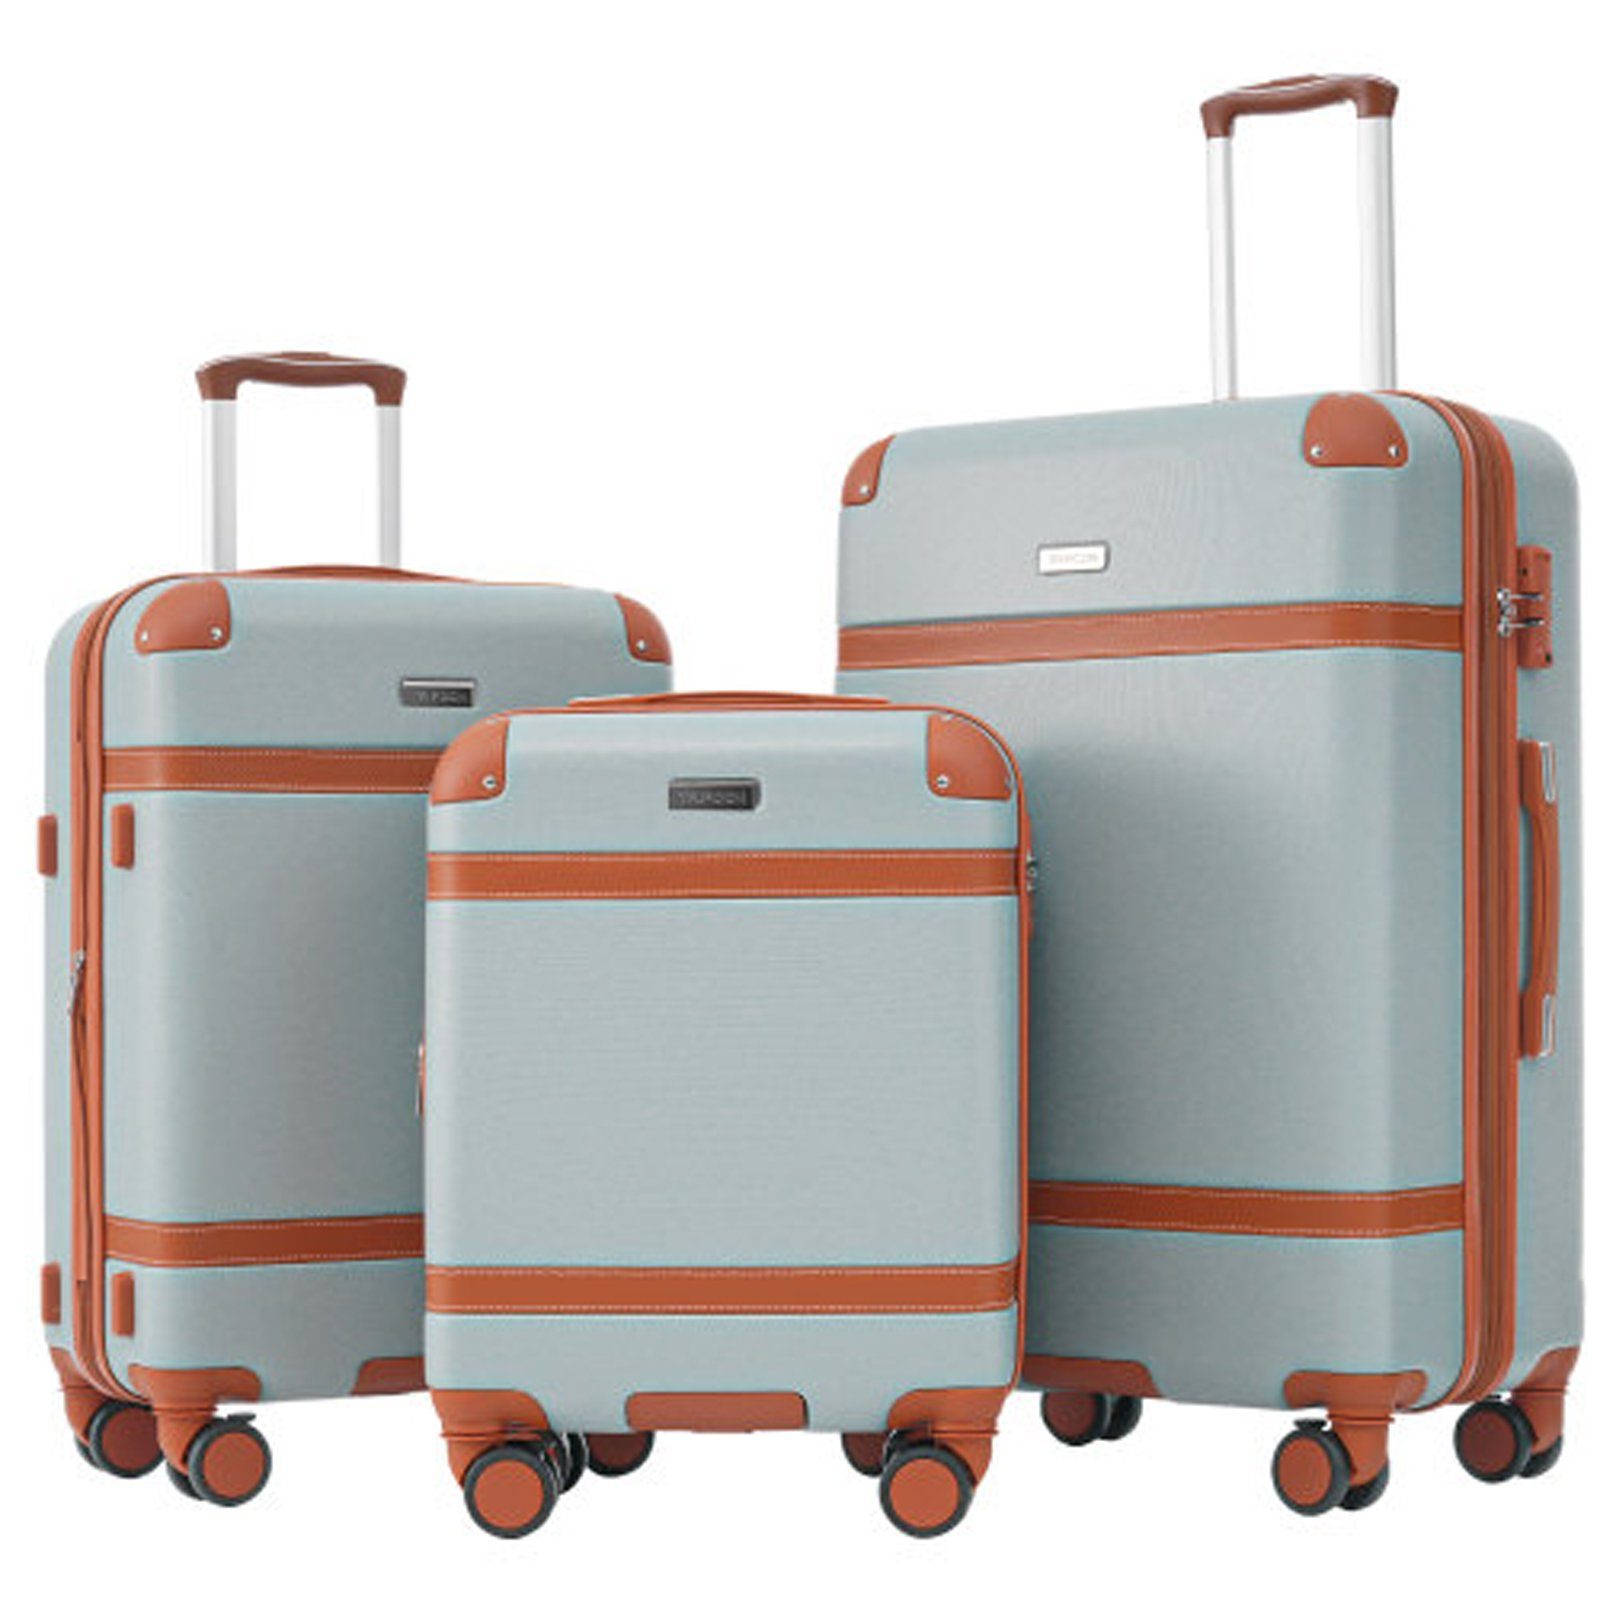 SEEZSSA Kofferset Kofferset 3-in-1-Kofferset Handgepäck 4 Rollen, Trolleyset,Kofferset aus ABS-Material hellgrün+braun